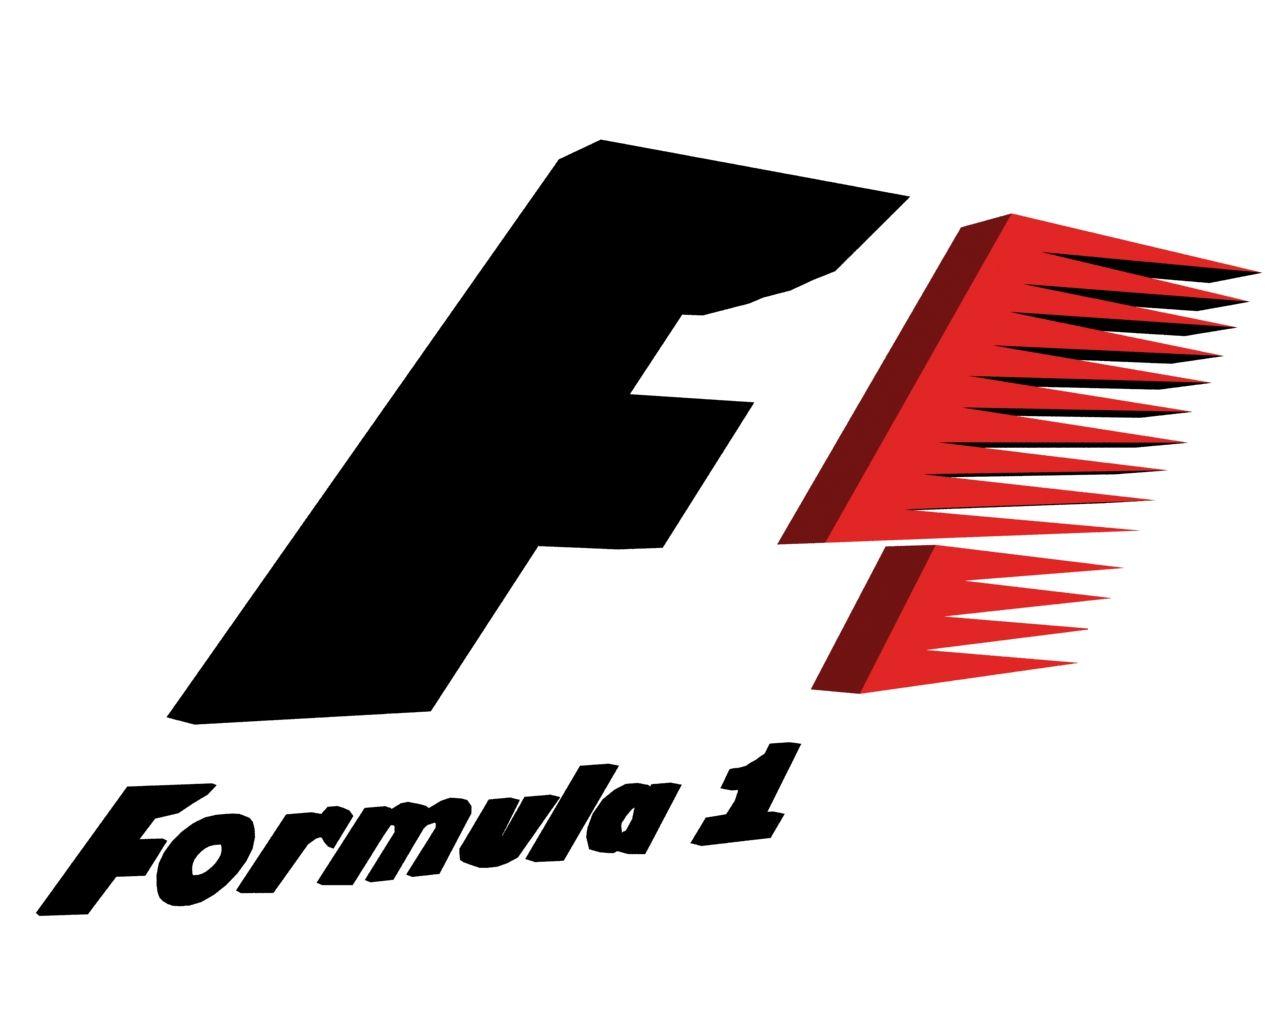 McLaren F1 Logo - favorite wheels. Formula Logos, Mclaren f1